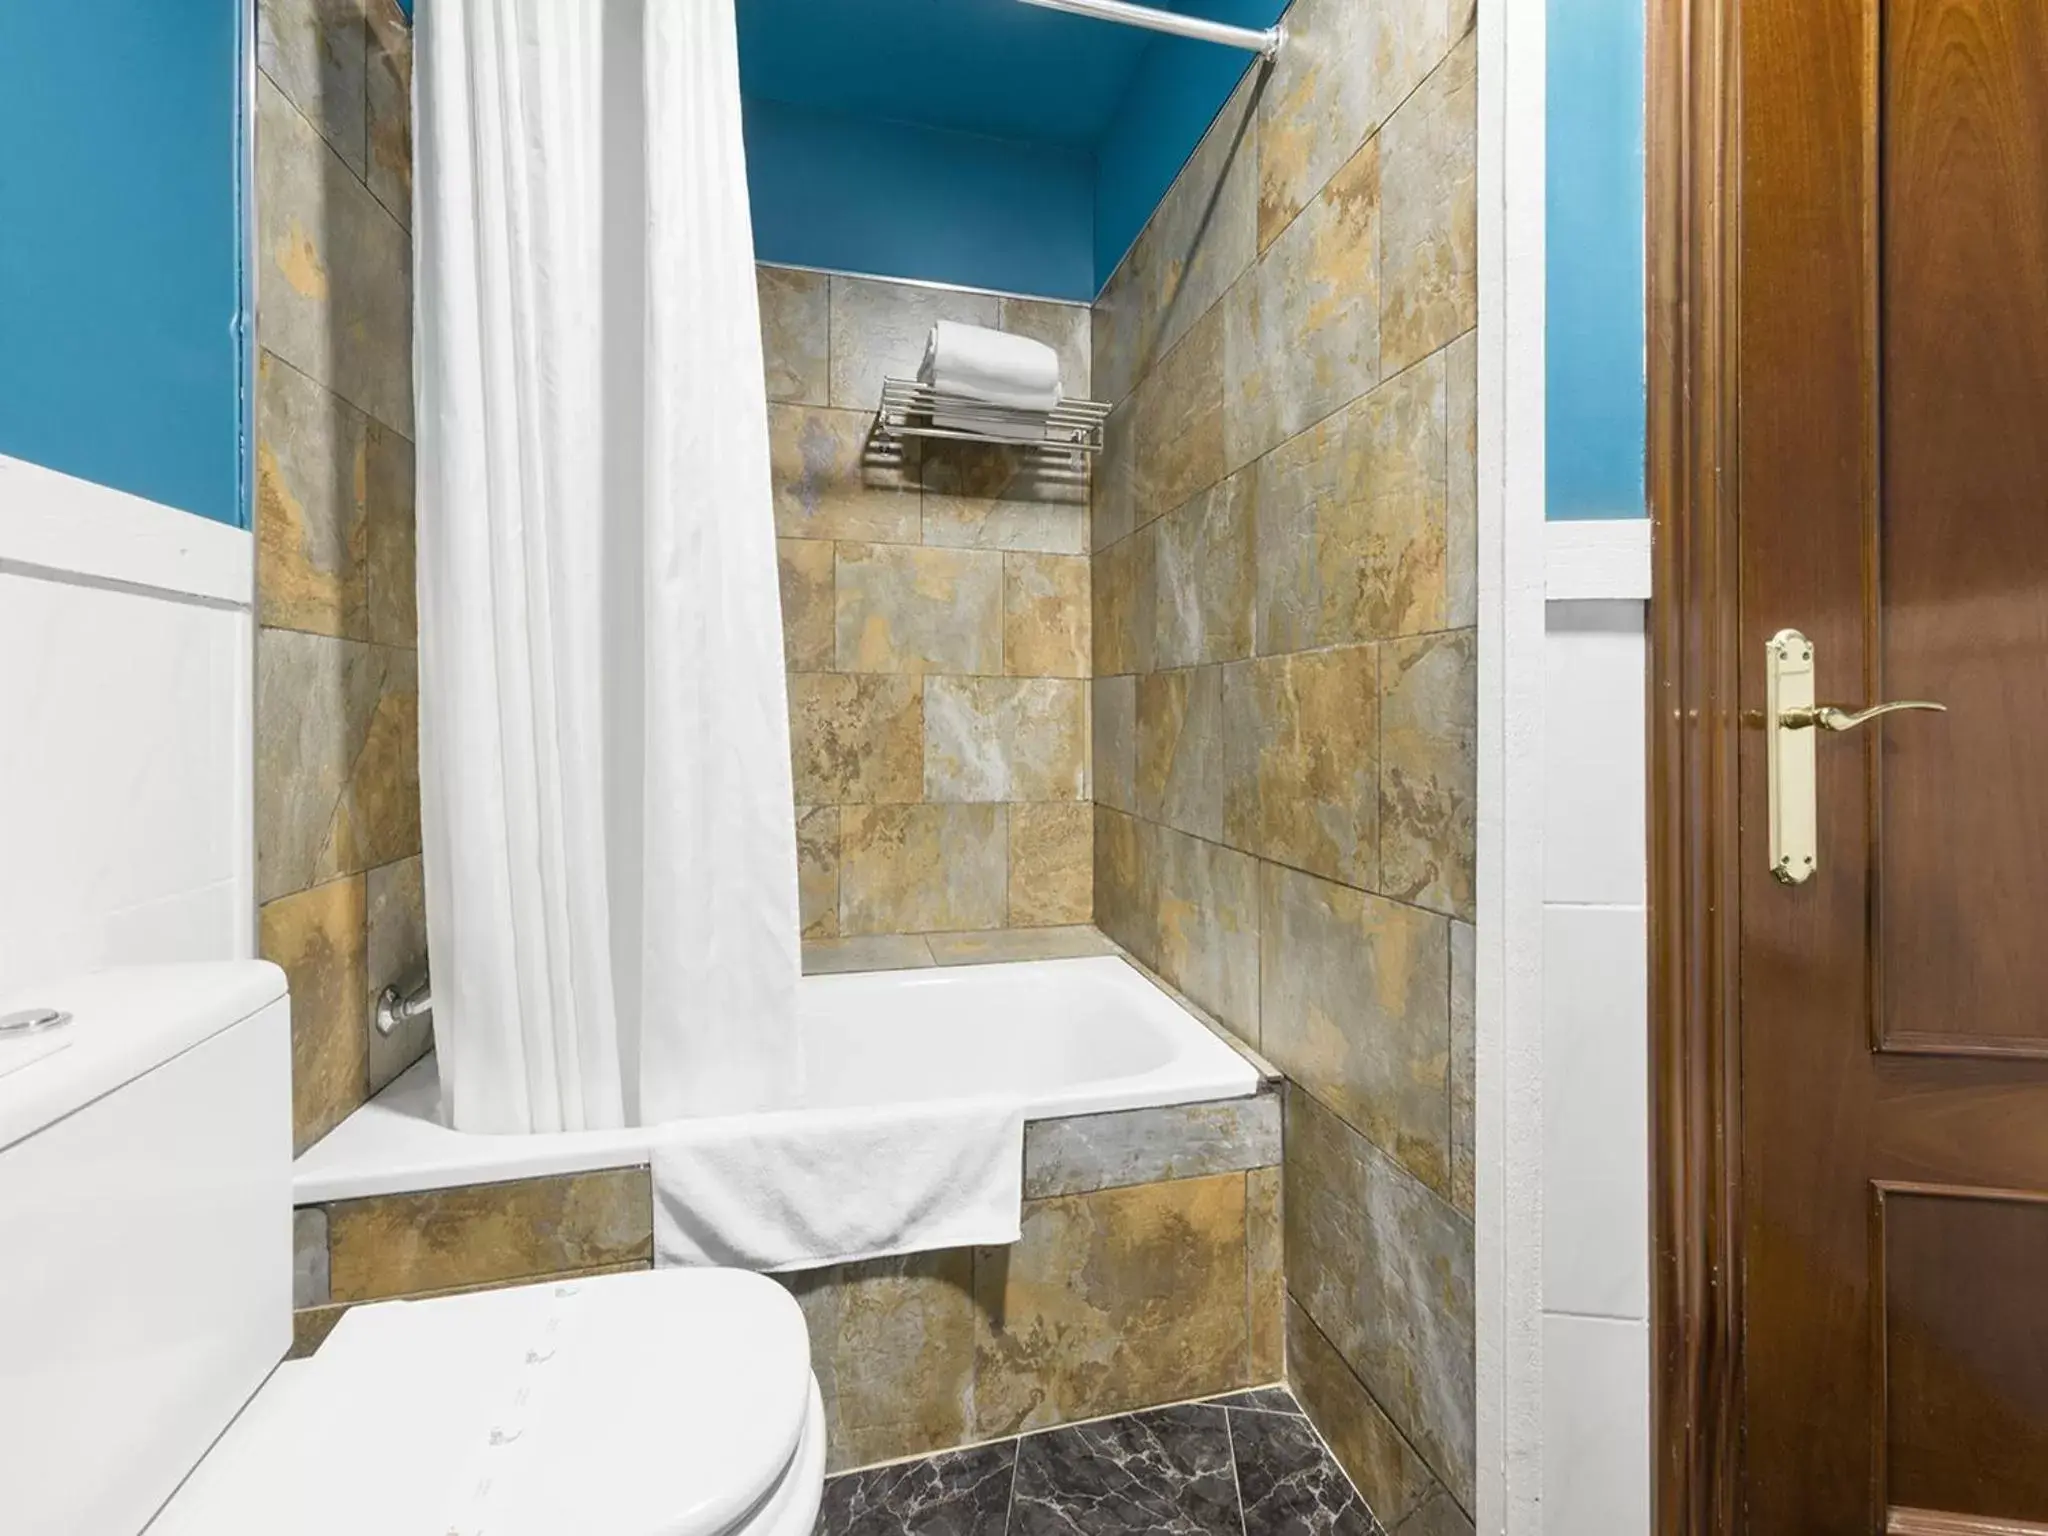 Decorative detail, Bathroom in Hotel San Miguel